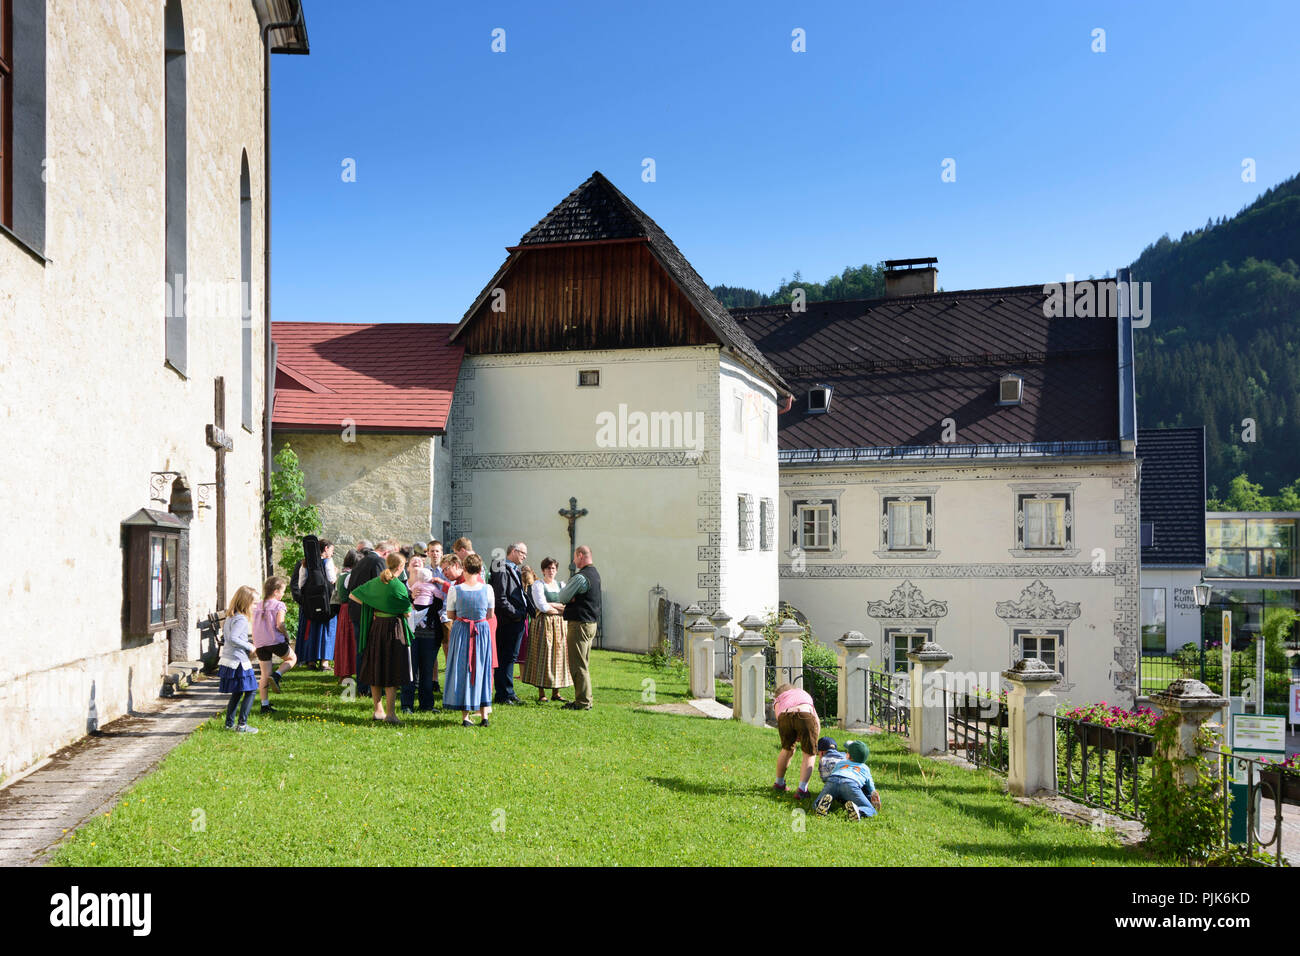 Göstling an der Ybbs, church, Sgraffito house in Austria, Lower Austria (Niederösterreich), Mostviertel region Stock Photo